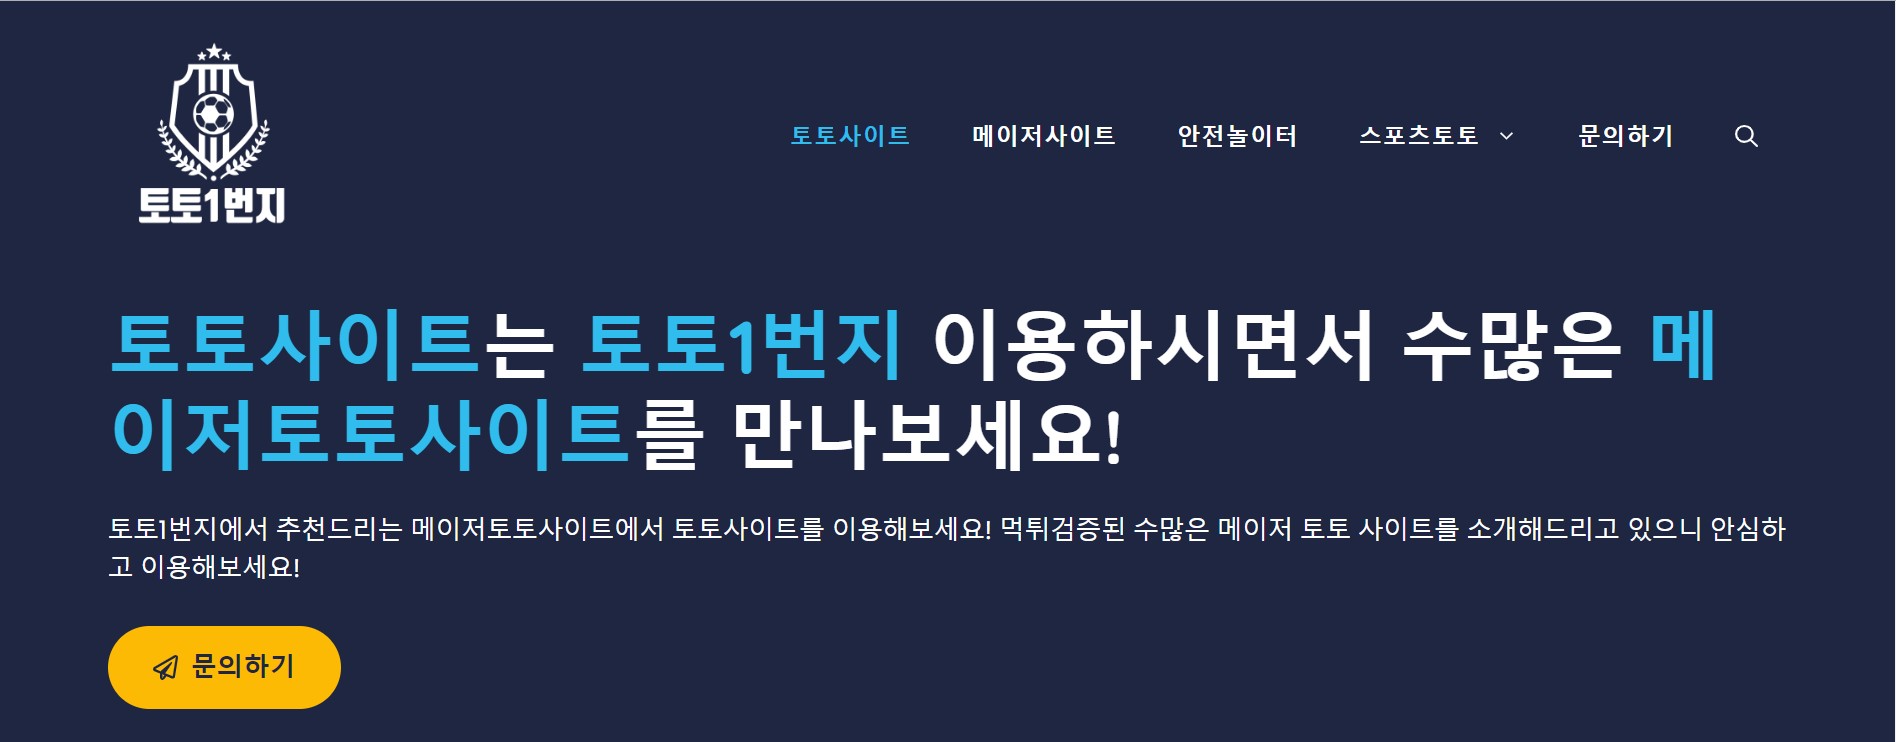 한국 온라인 스포츠 베팅 산업의 부상